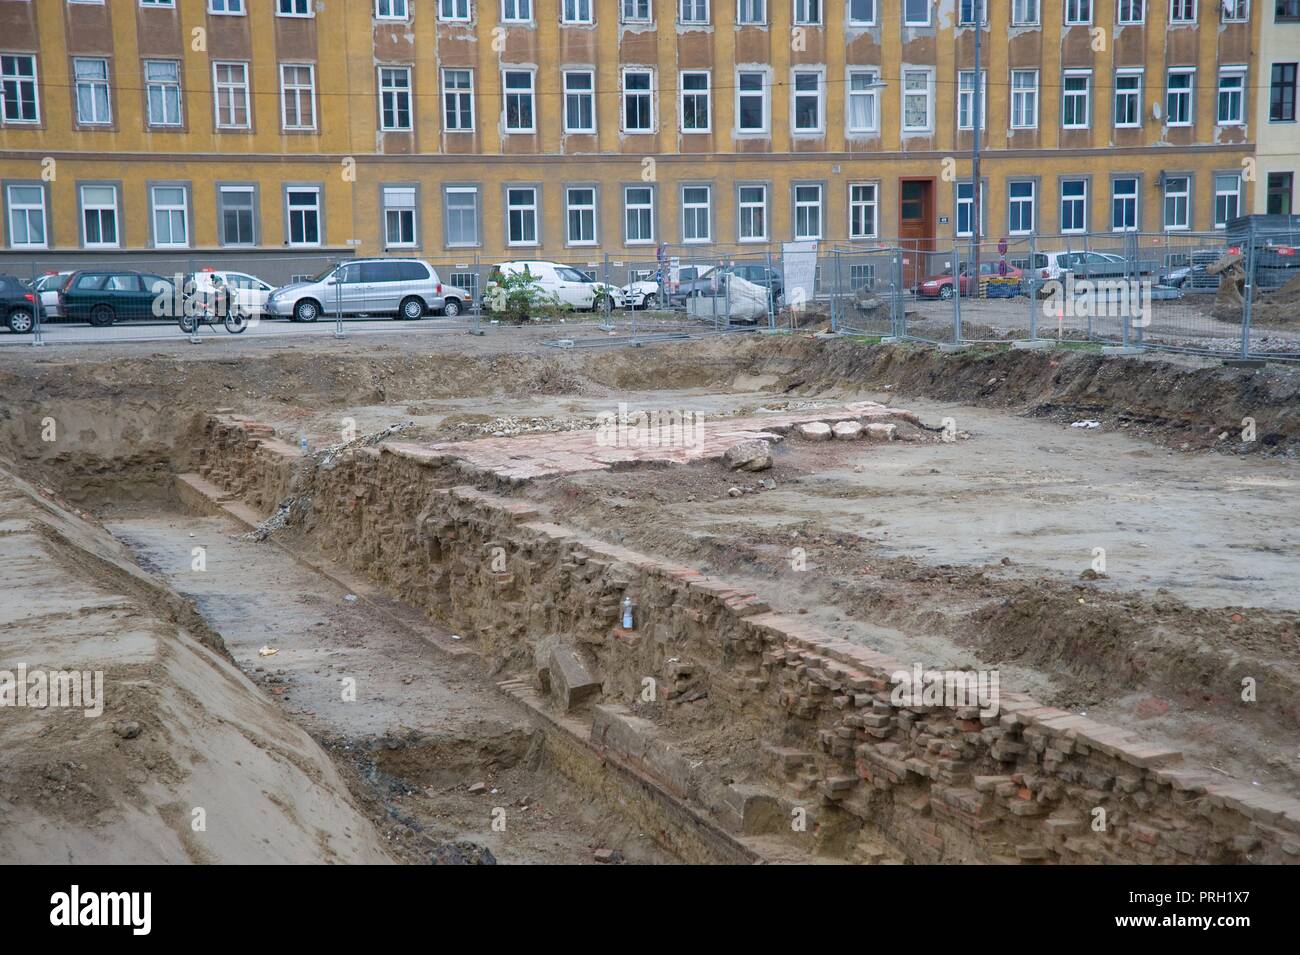 Wien, Stadtentwicklungsgebiet Aspangbahnhof, Ausgrabungen der ehemaligen Hafenbecken des Wiener Neustädter Kanals Foto Stock